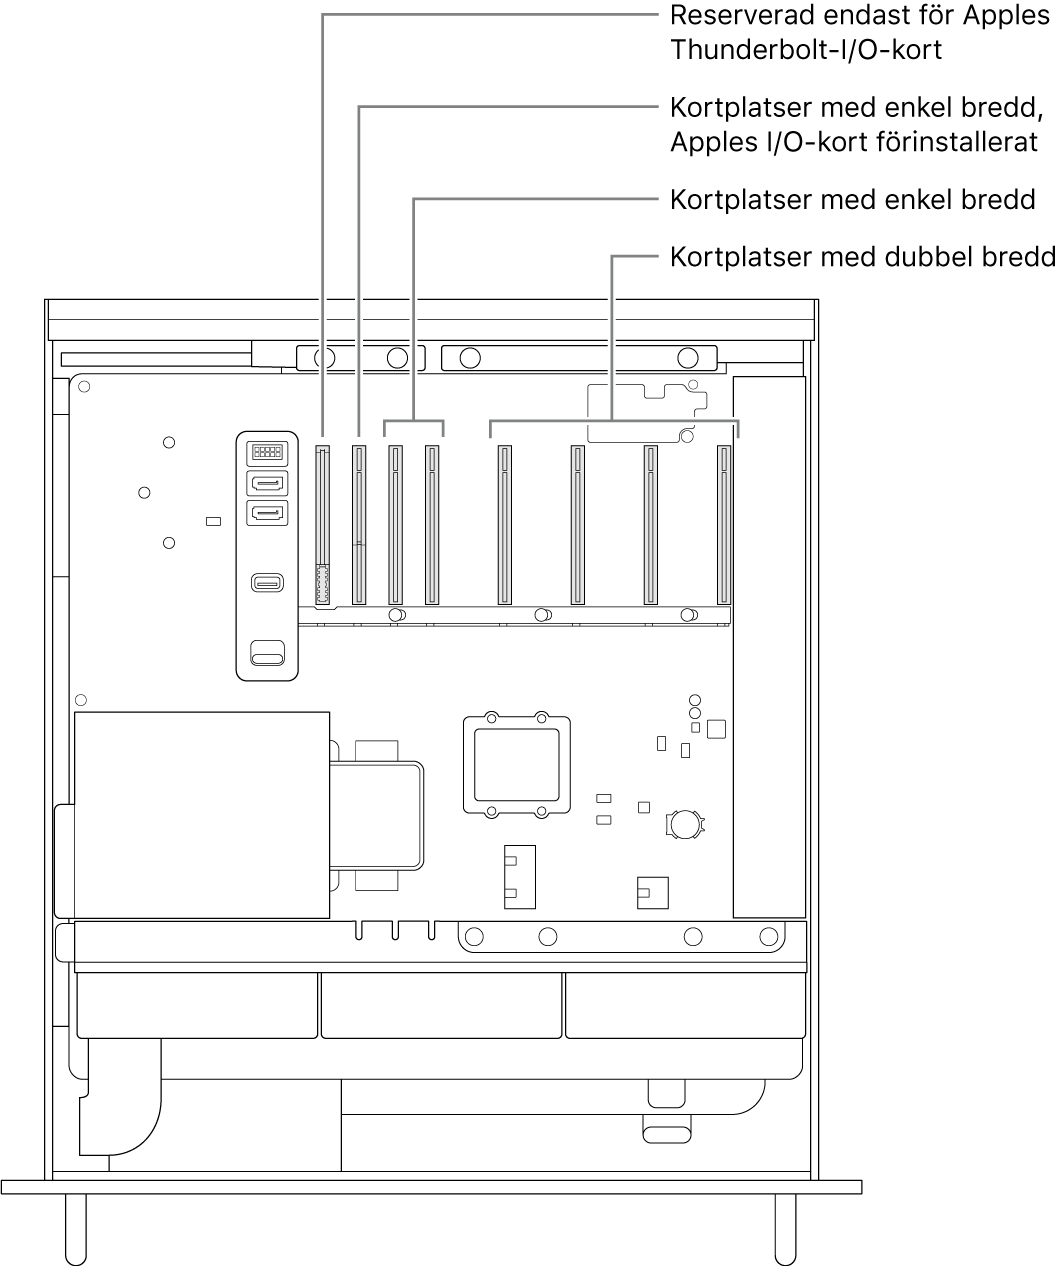 Sidan på Mac Pro är öppen med pilar som visar placeringen för kortplatsen för Thunderbolt-I/O-kortet, kortplatsen med enkel bredd för Apples I/O-kort, två kortplatser med enkel bredd och fyra kortplatser med dubbel bredd.